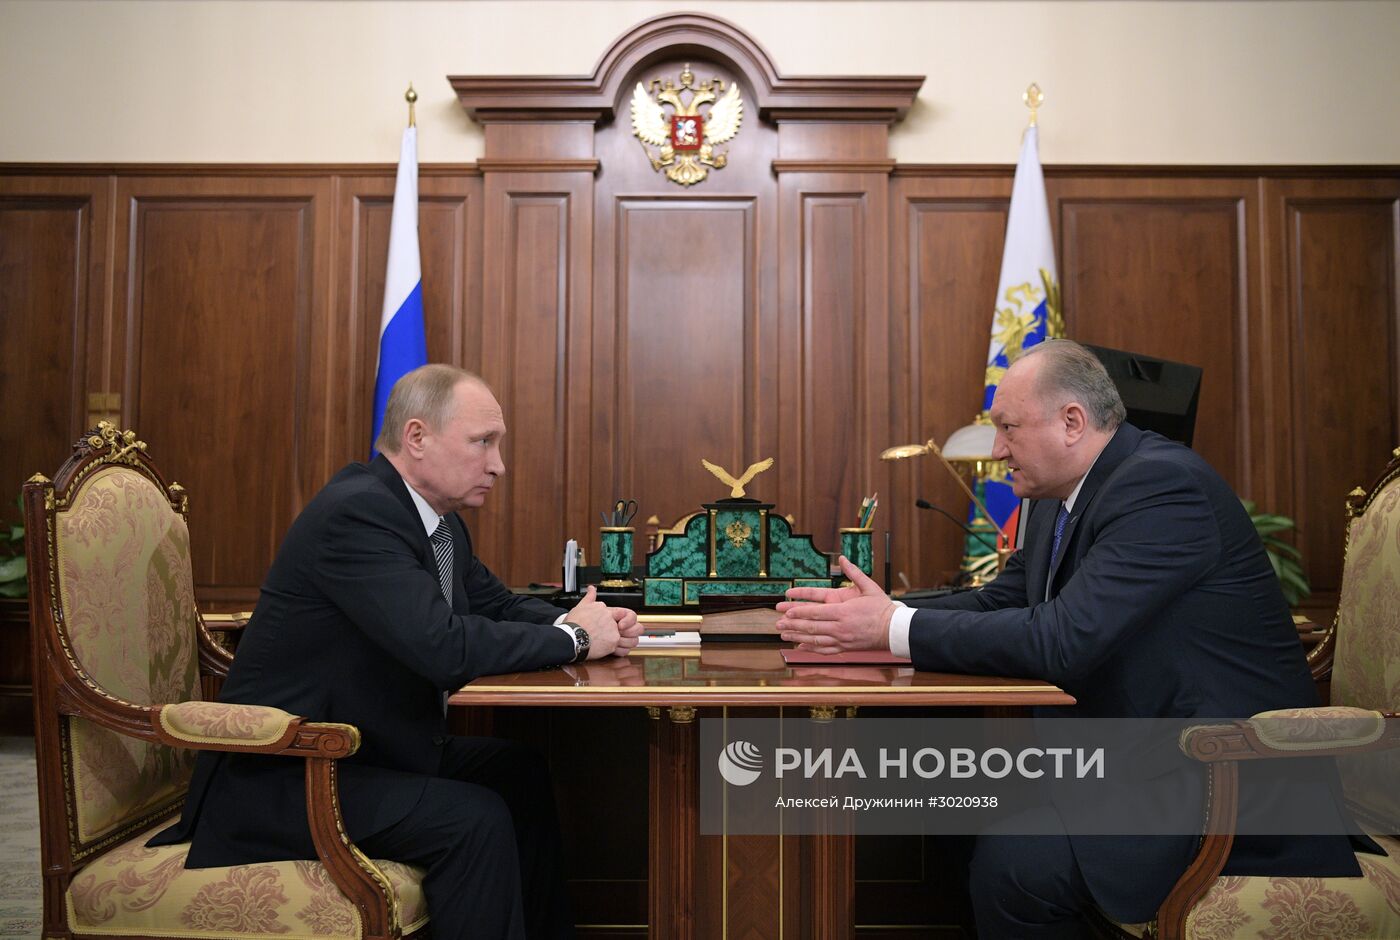 Рабочая встреча президента РФ В. Путина с губернатором Камчатского края В. Илюхиным